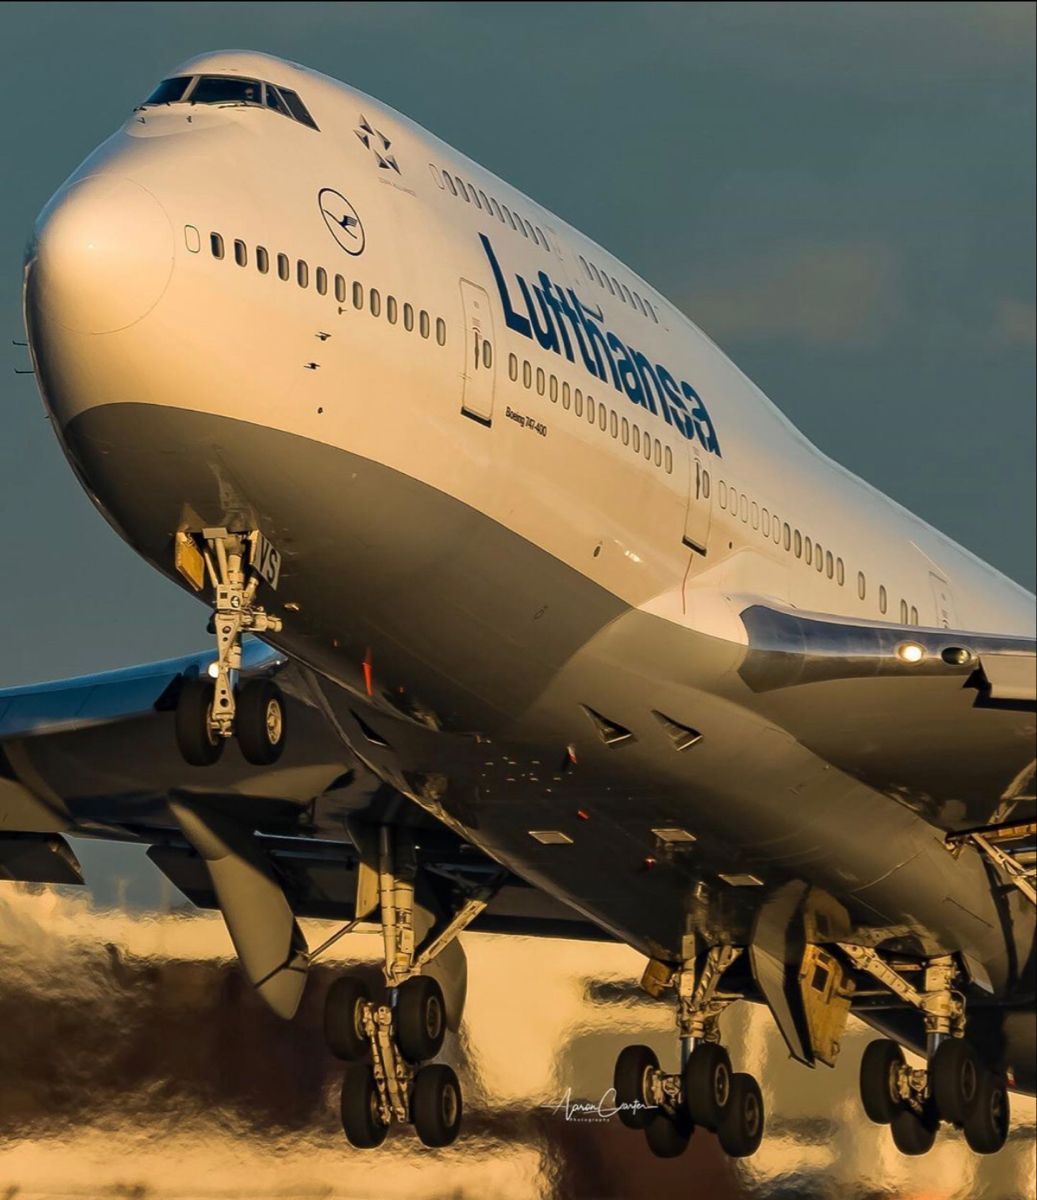  Boeing Hintergrundbild 1037x1200. Lufthansa B747. Aviation airplane, Best airplane, Aircraft